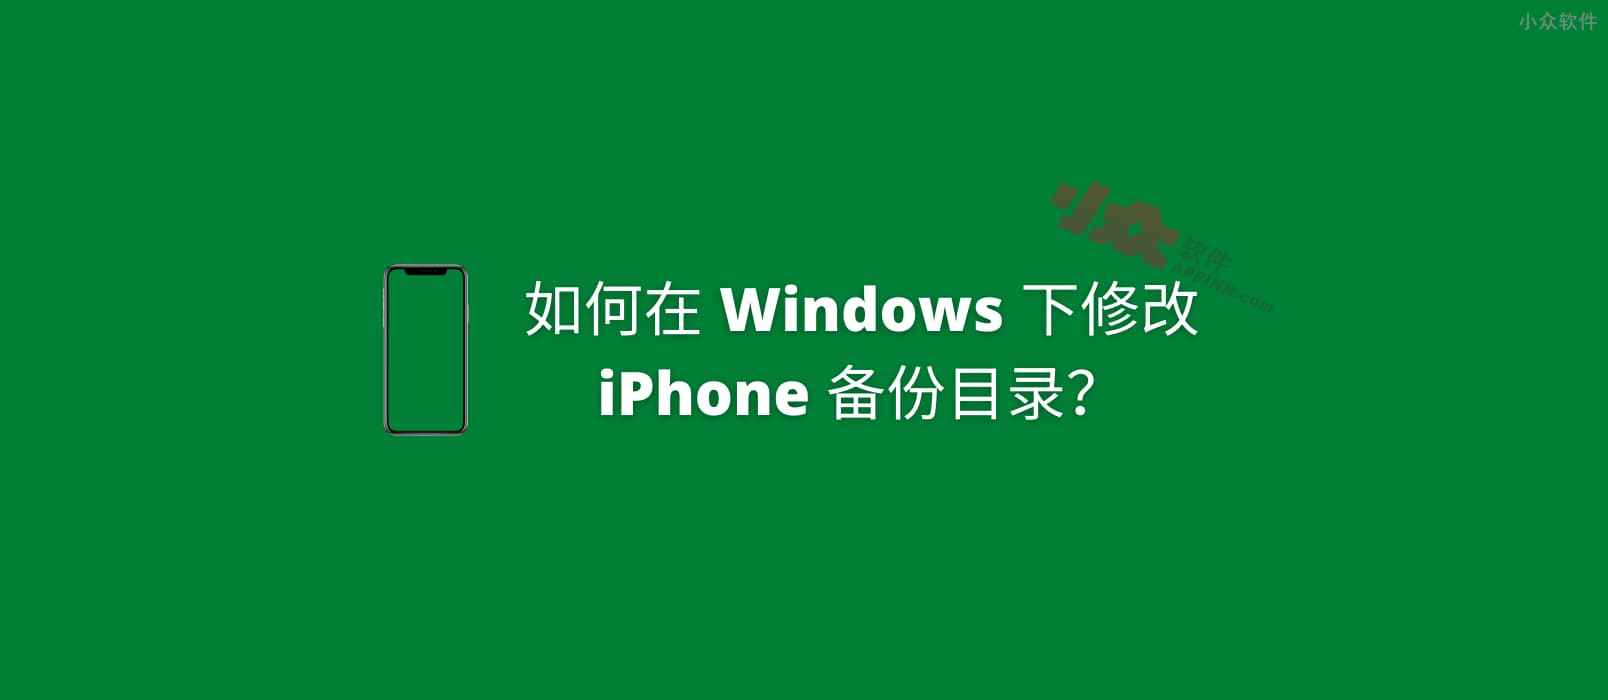 如何在 Windows 下修改 iPhone 备份目录？以节省 C 盘空间